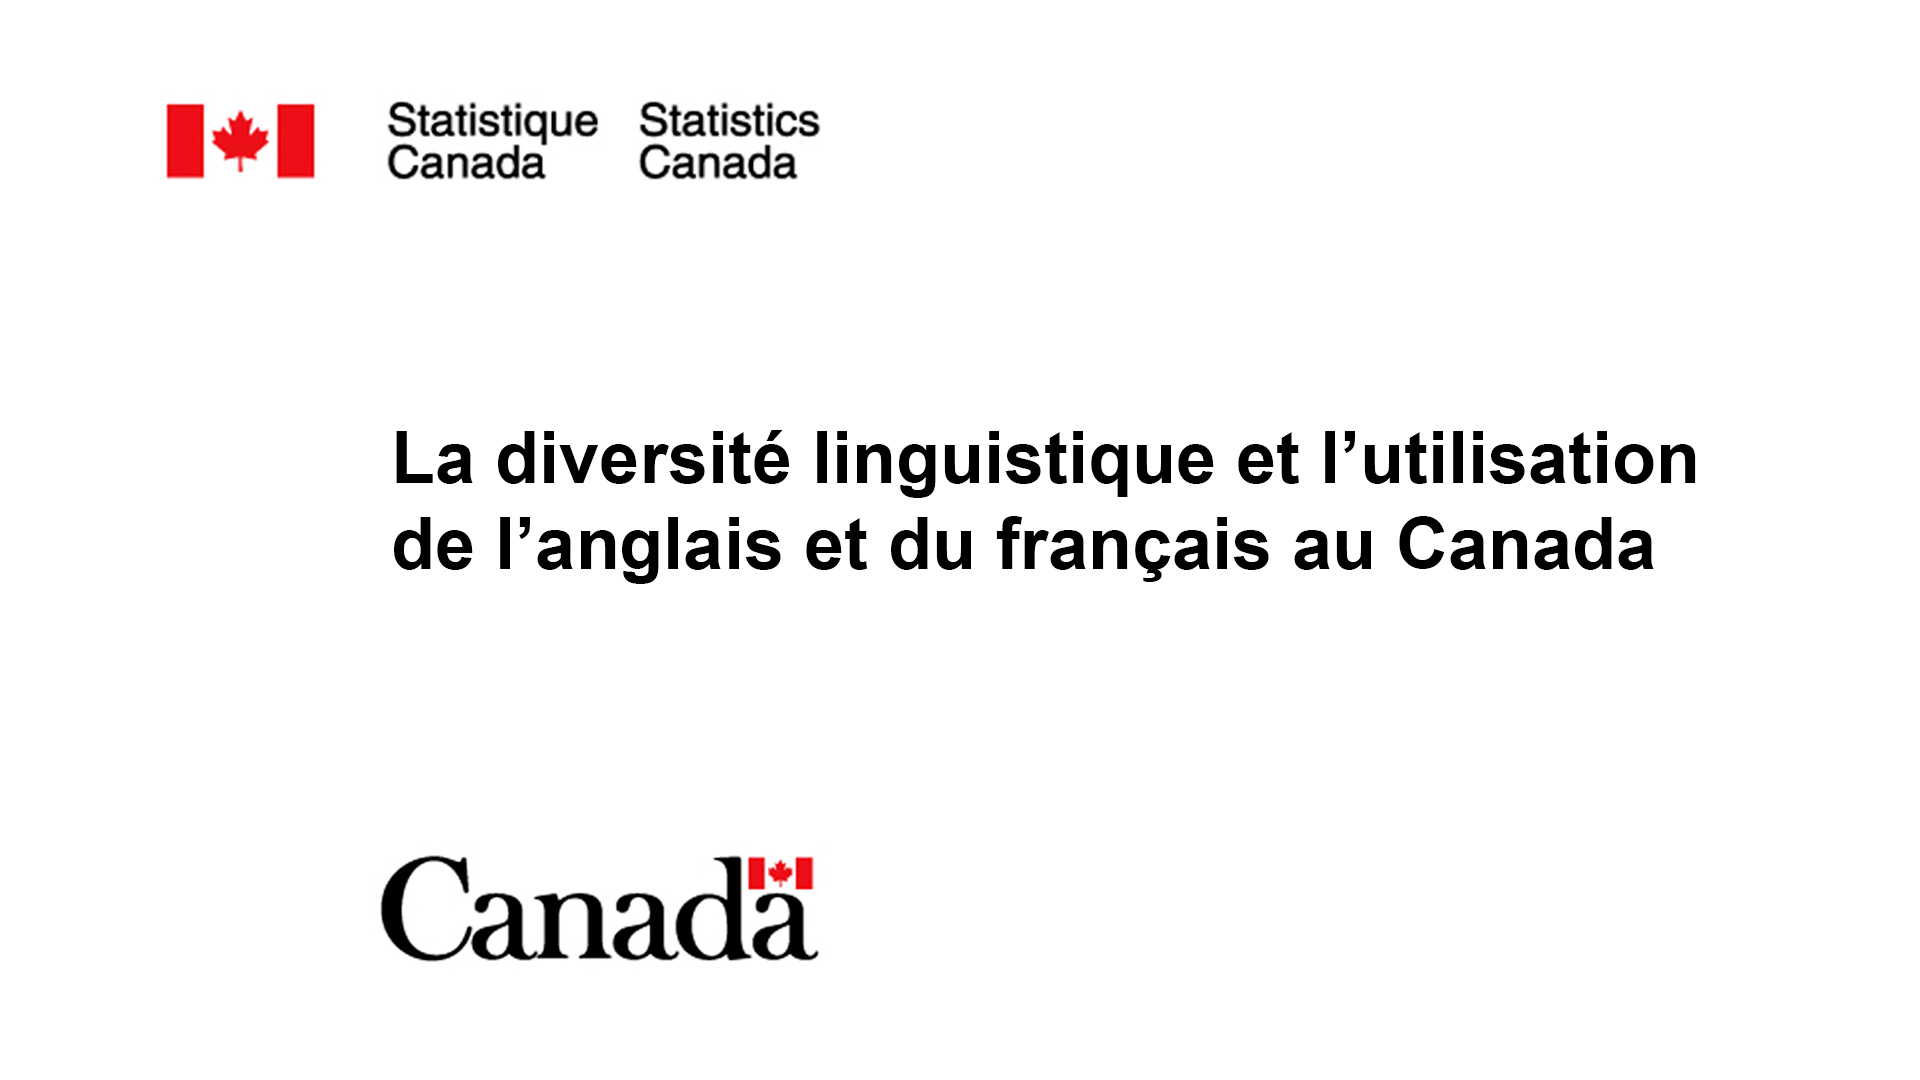 La diversité linguistique et l'utilisation de l'anglais et du français au Canada